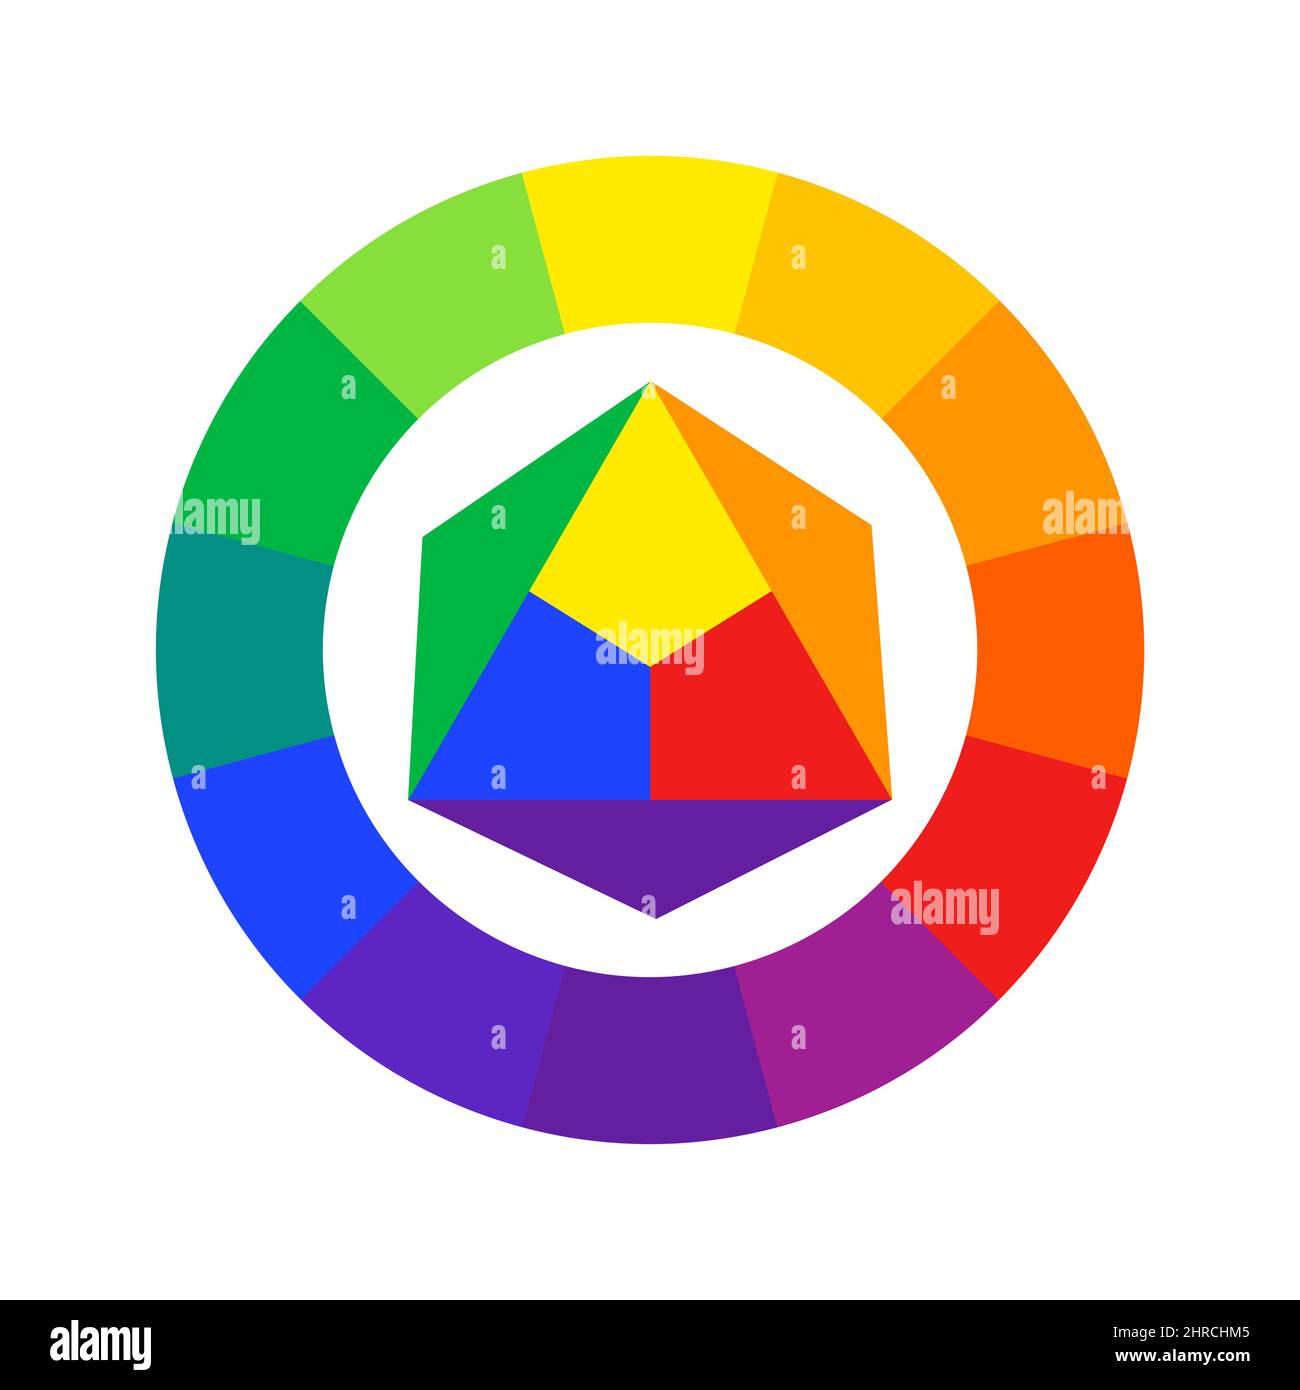 Guide de roue de couleur basé sur le modèle RYB. Mélange des couleurs primaires rouge, jaune, bleu. Le système de couleurs est utilisé par les artistes Illustration de Vecteur